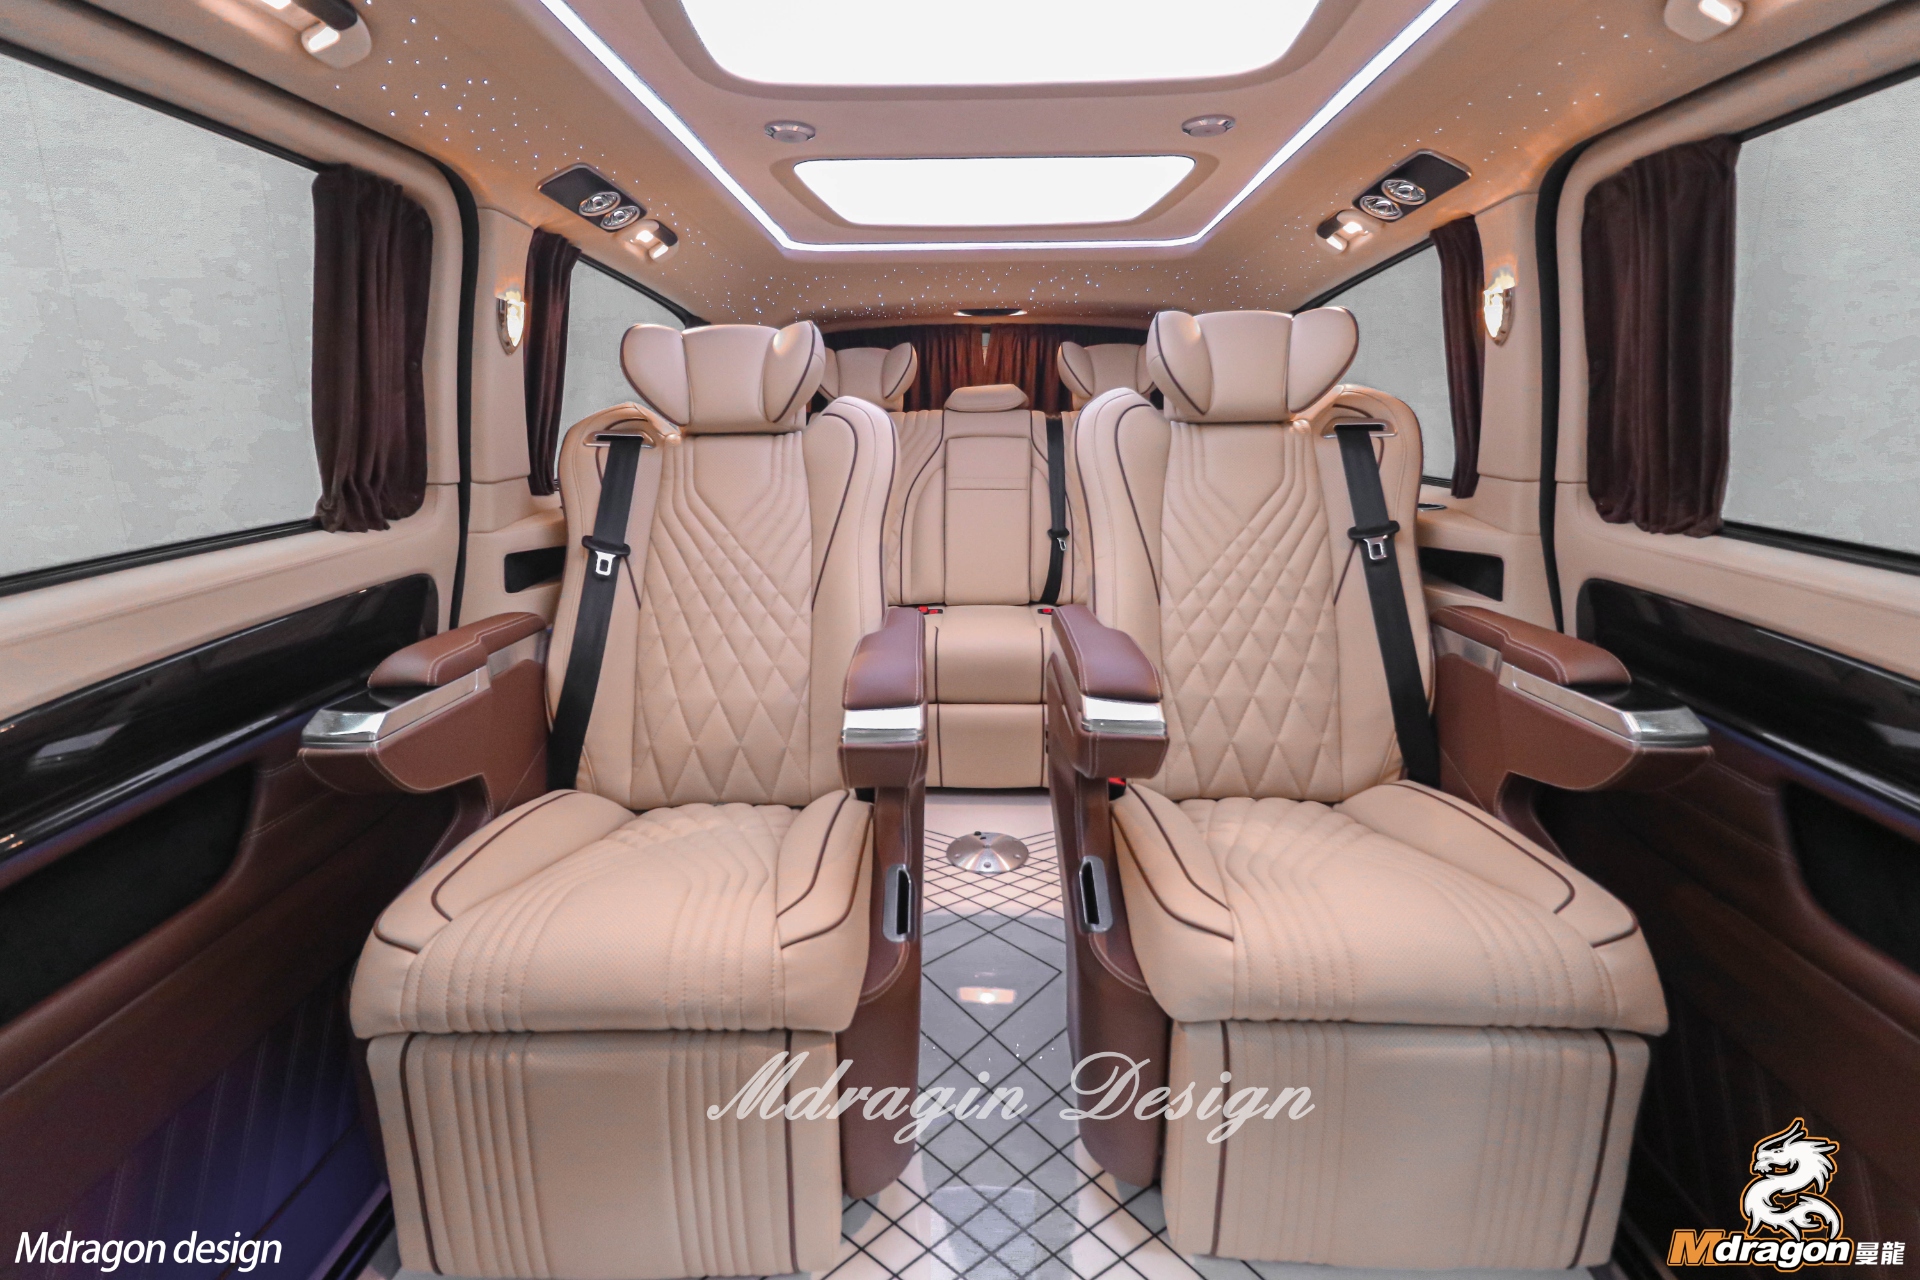 No.385 2015-2018 Benz Vito interior modification